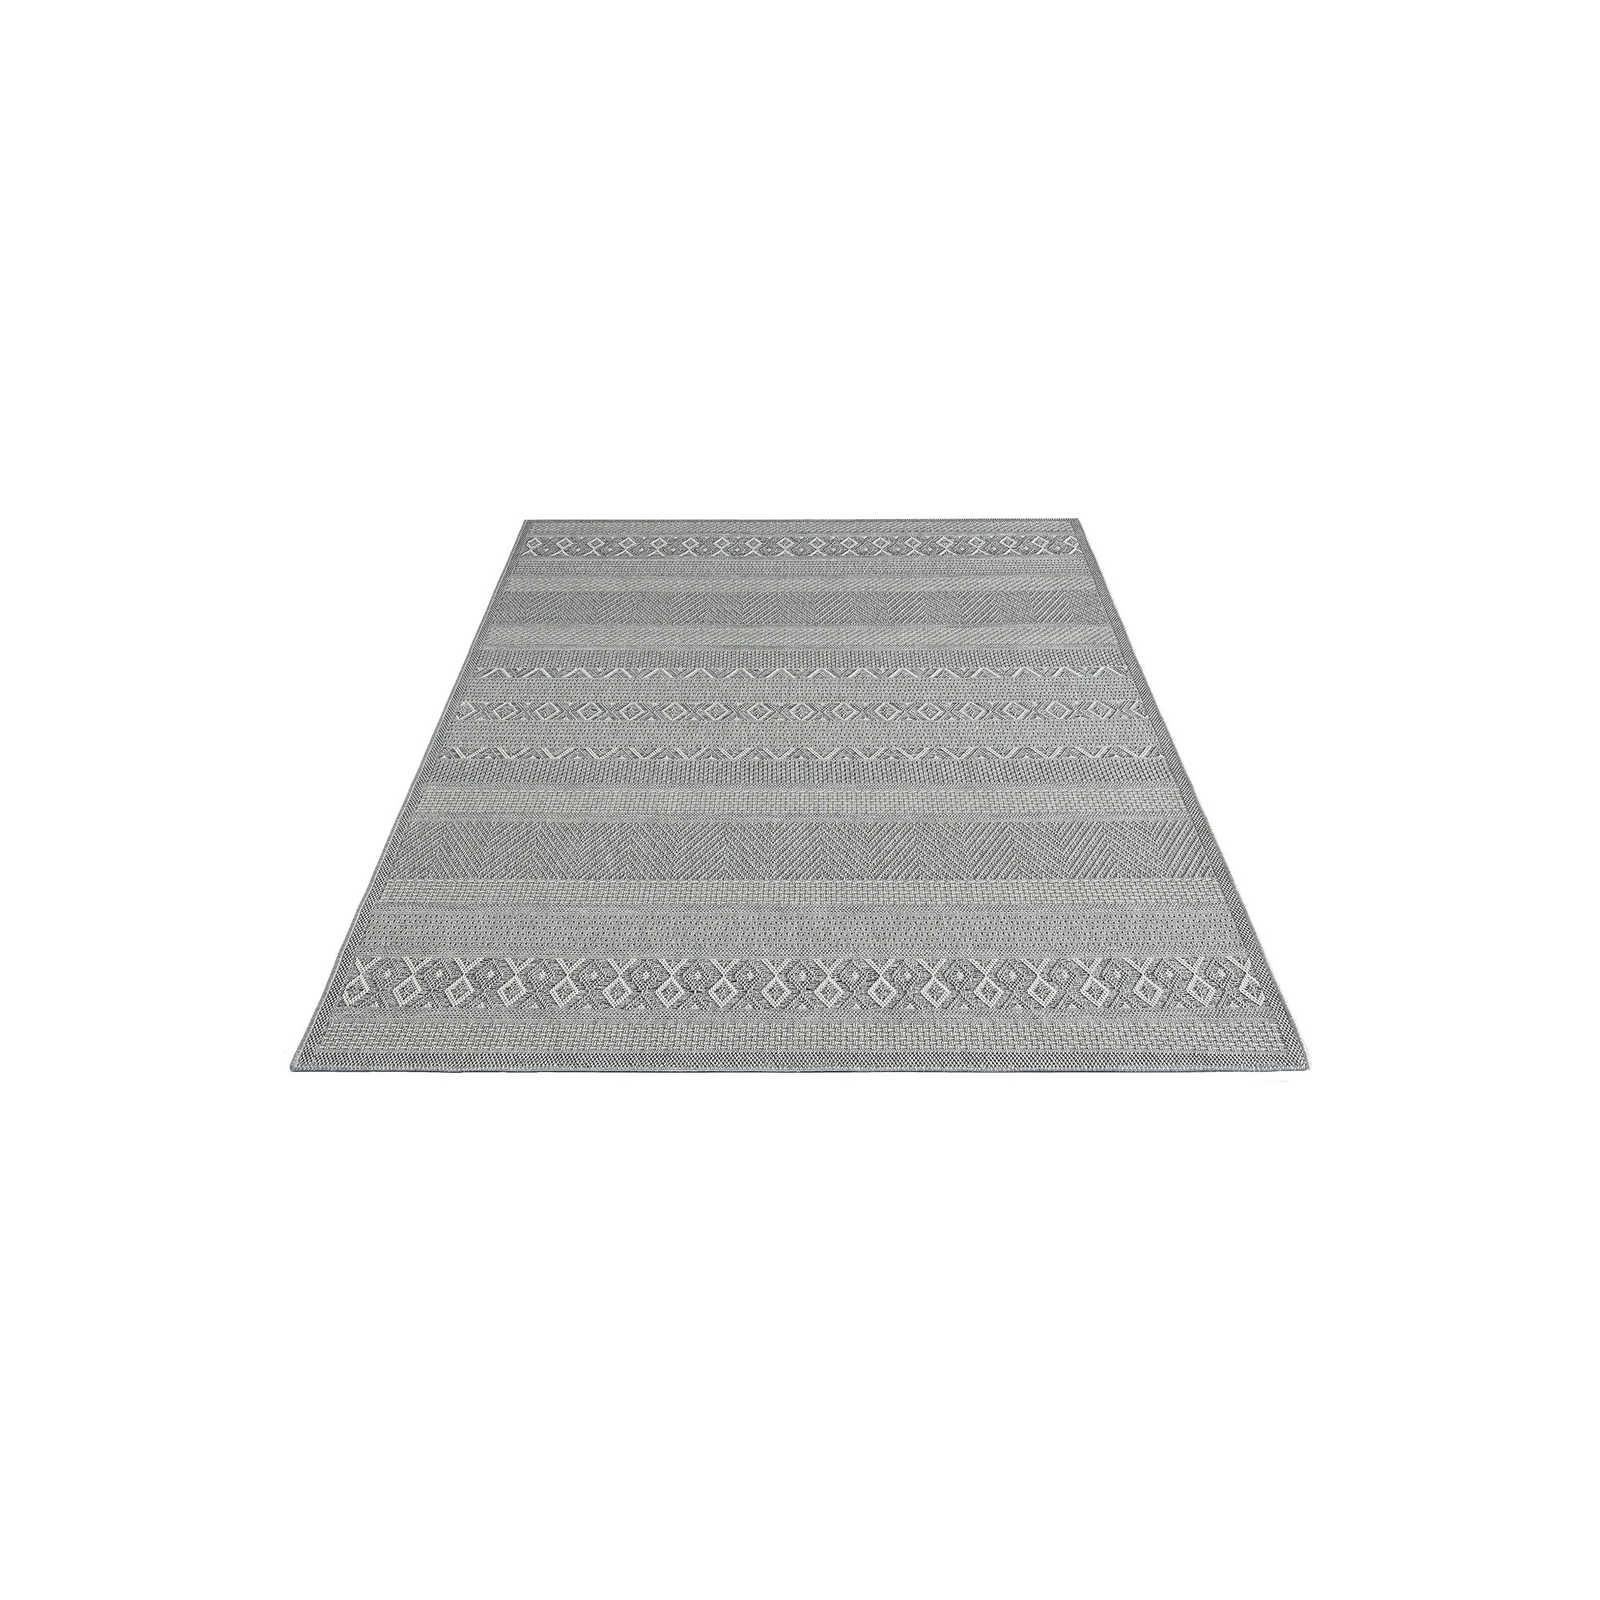 Buitenkleed met eenvoudig patroon in grijs - 150 x 80 cm
